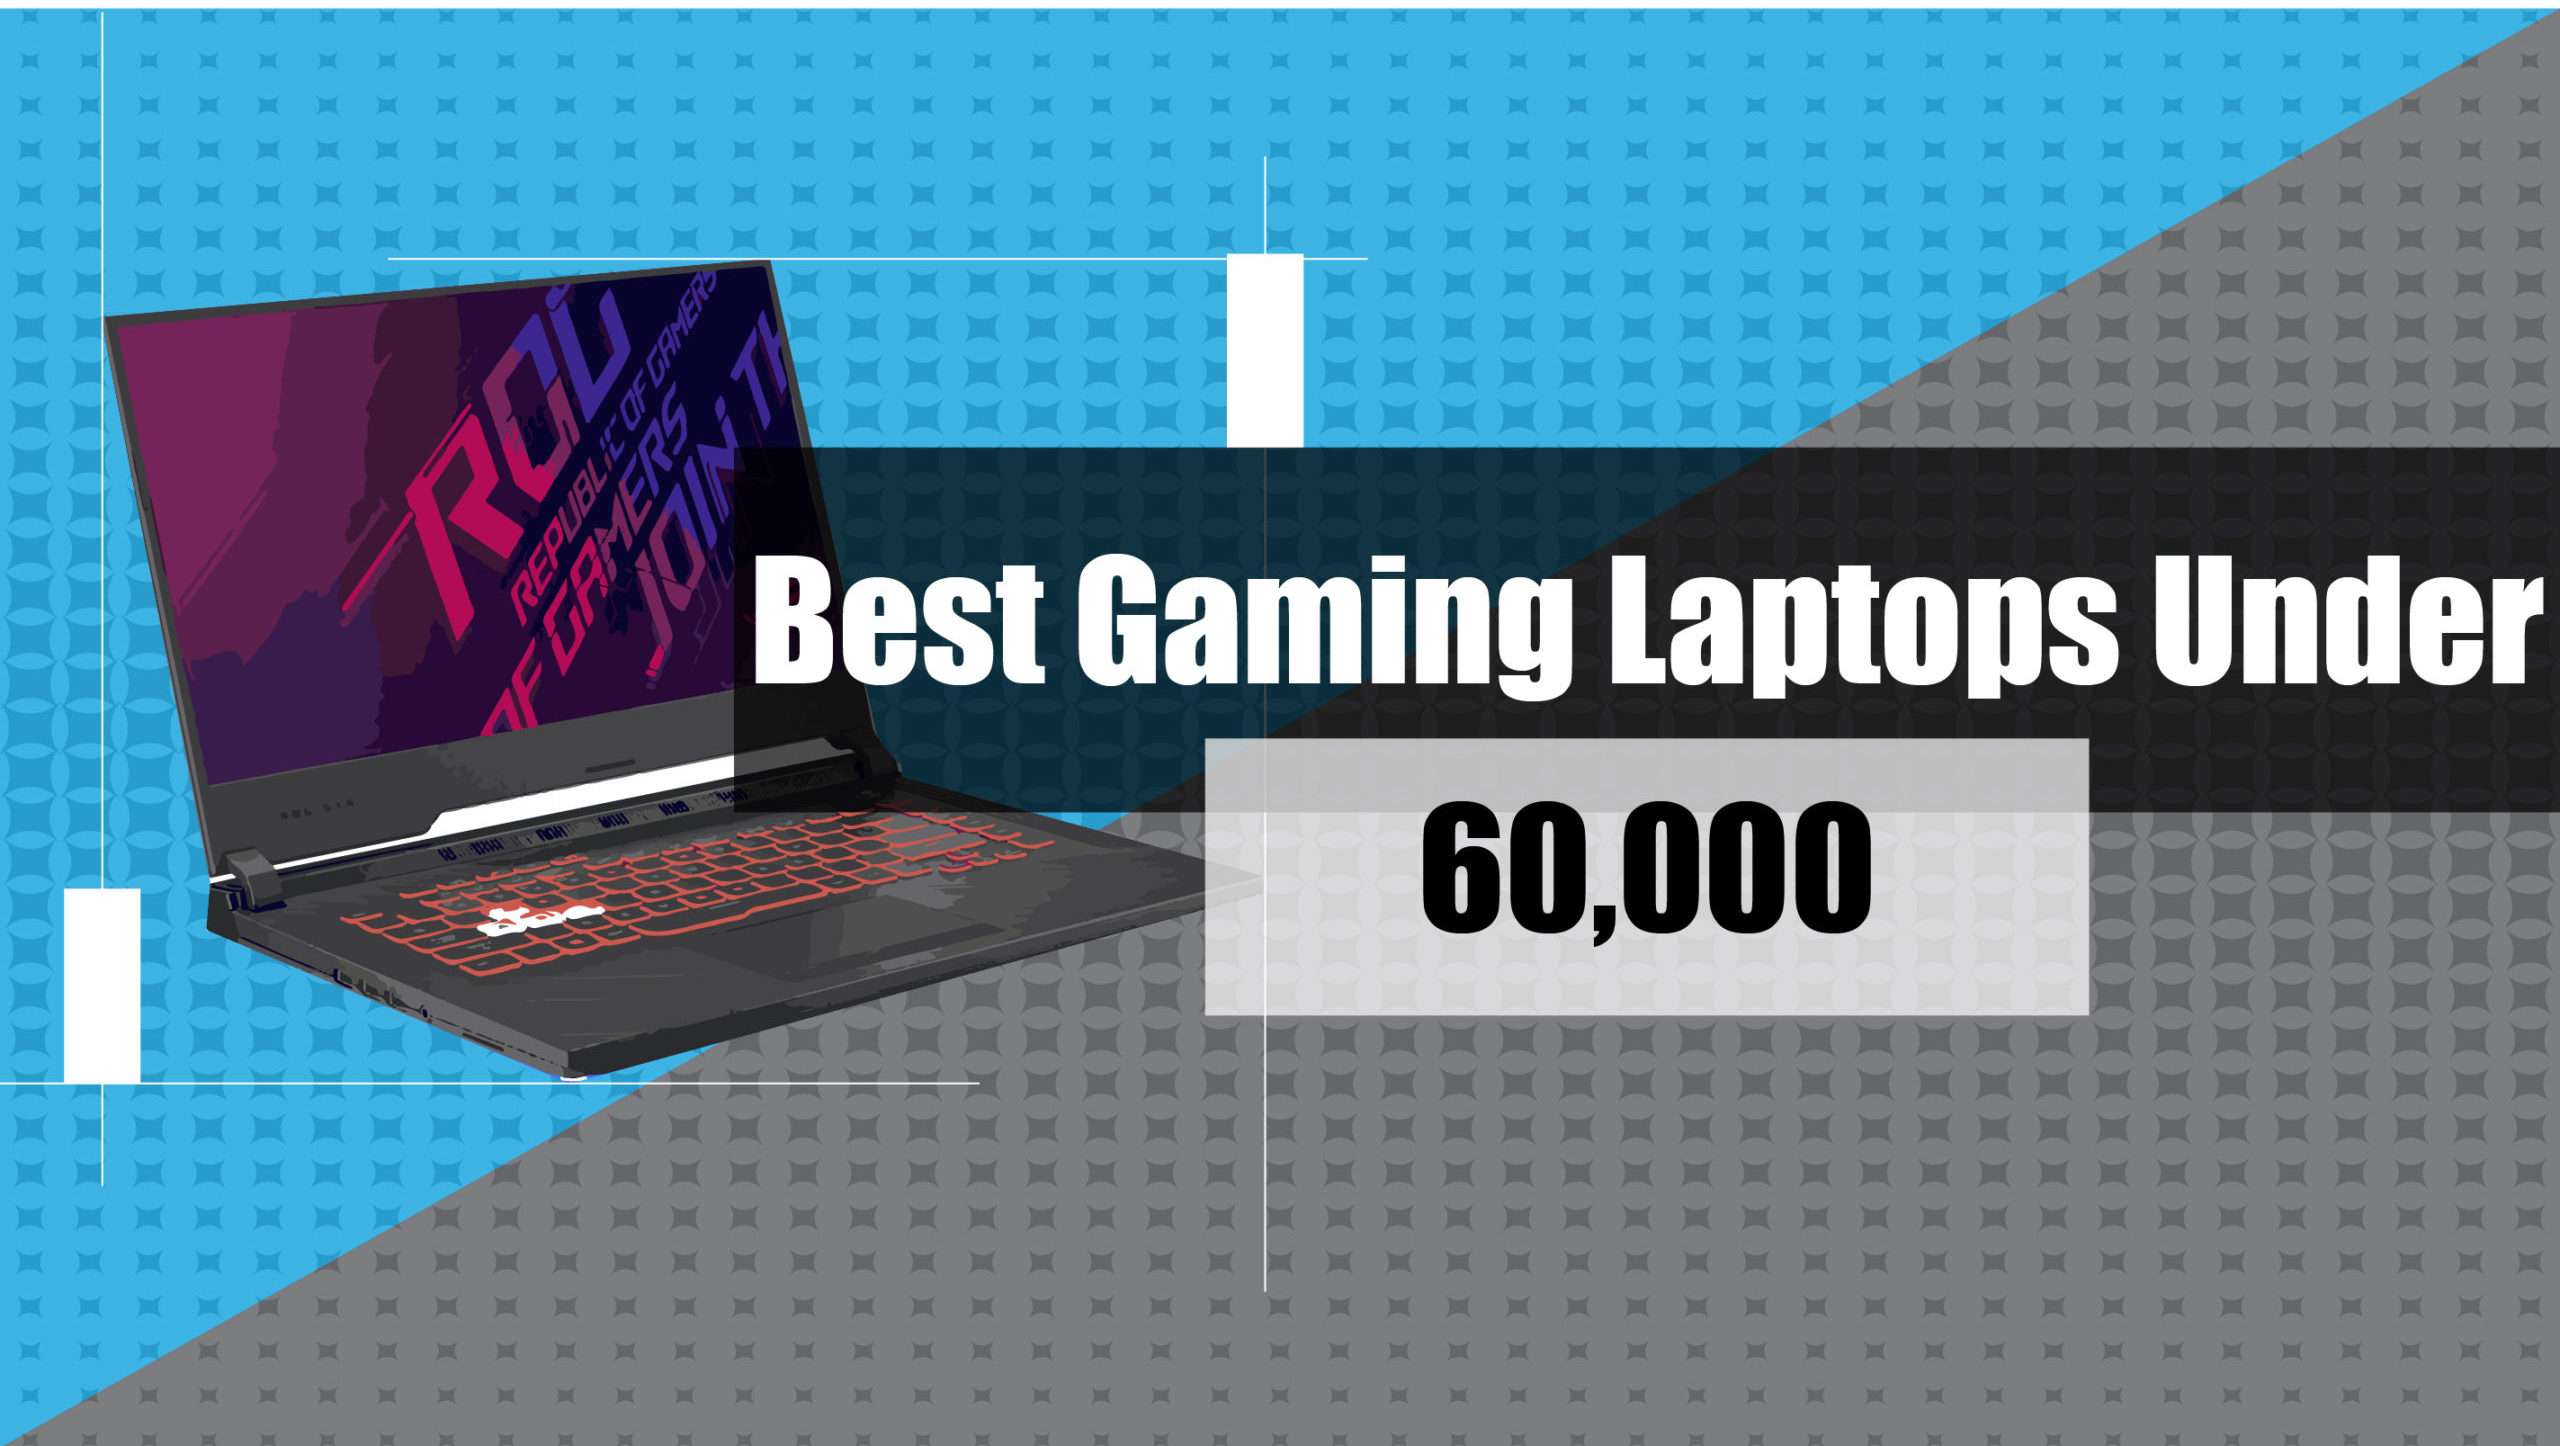 Best Gaming Laptops Under 60,000